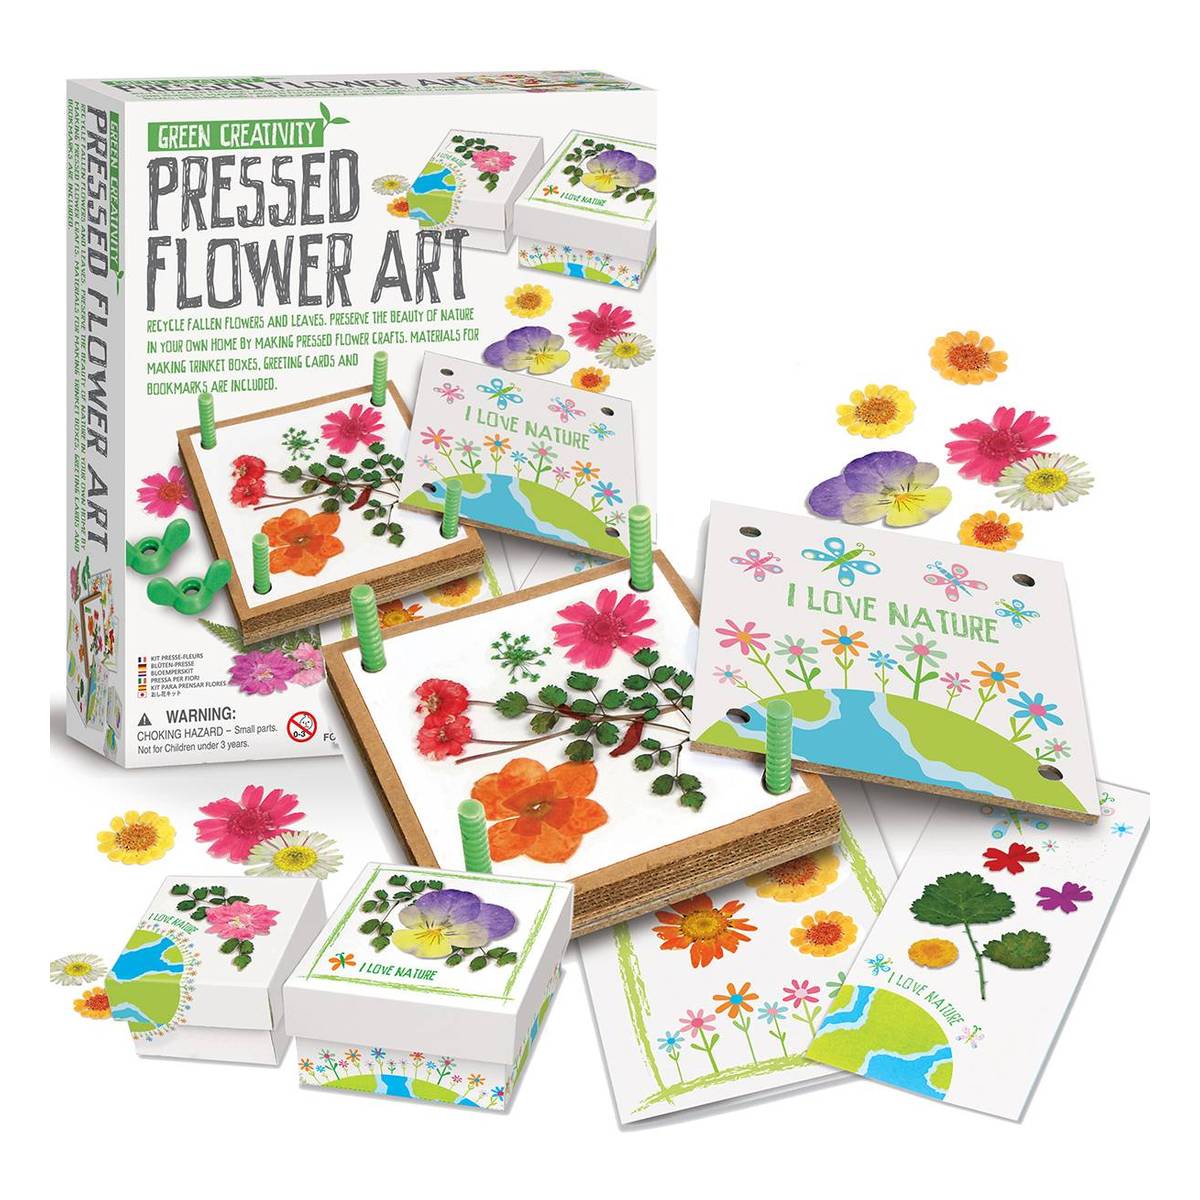 Pressed flower art : r/crafts